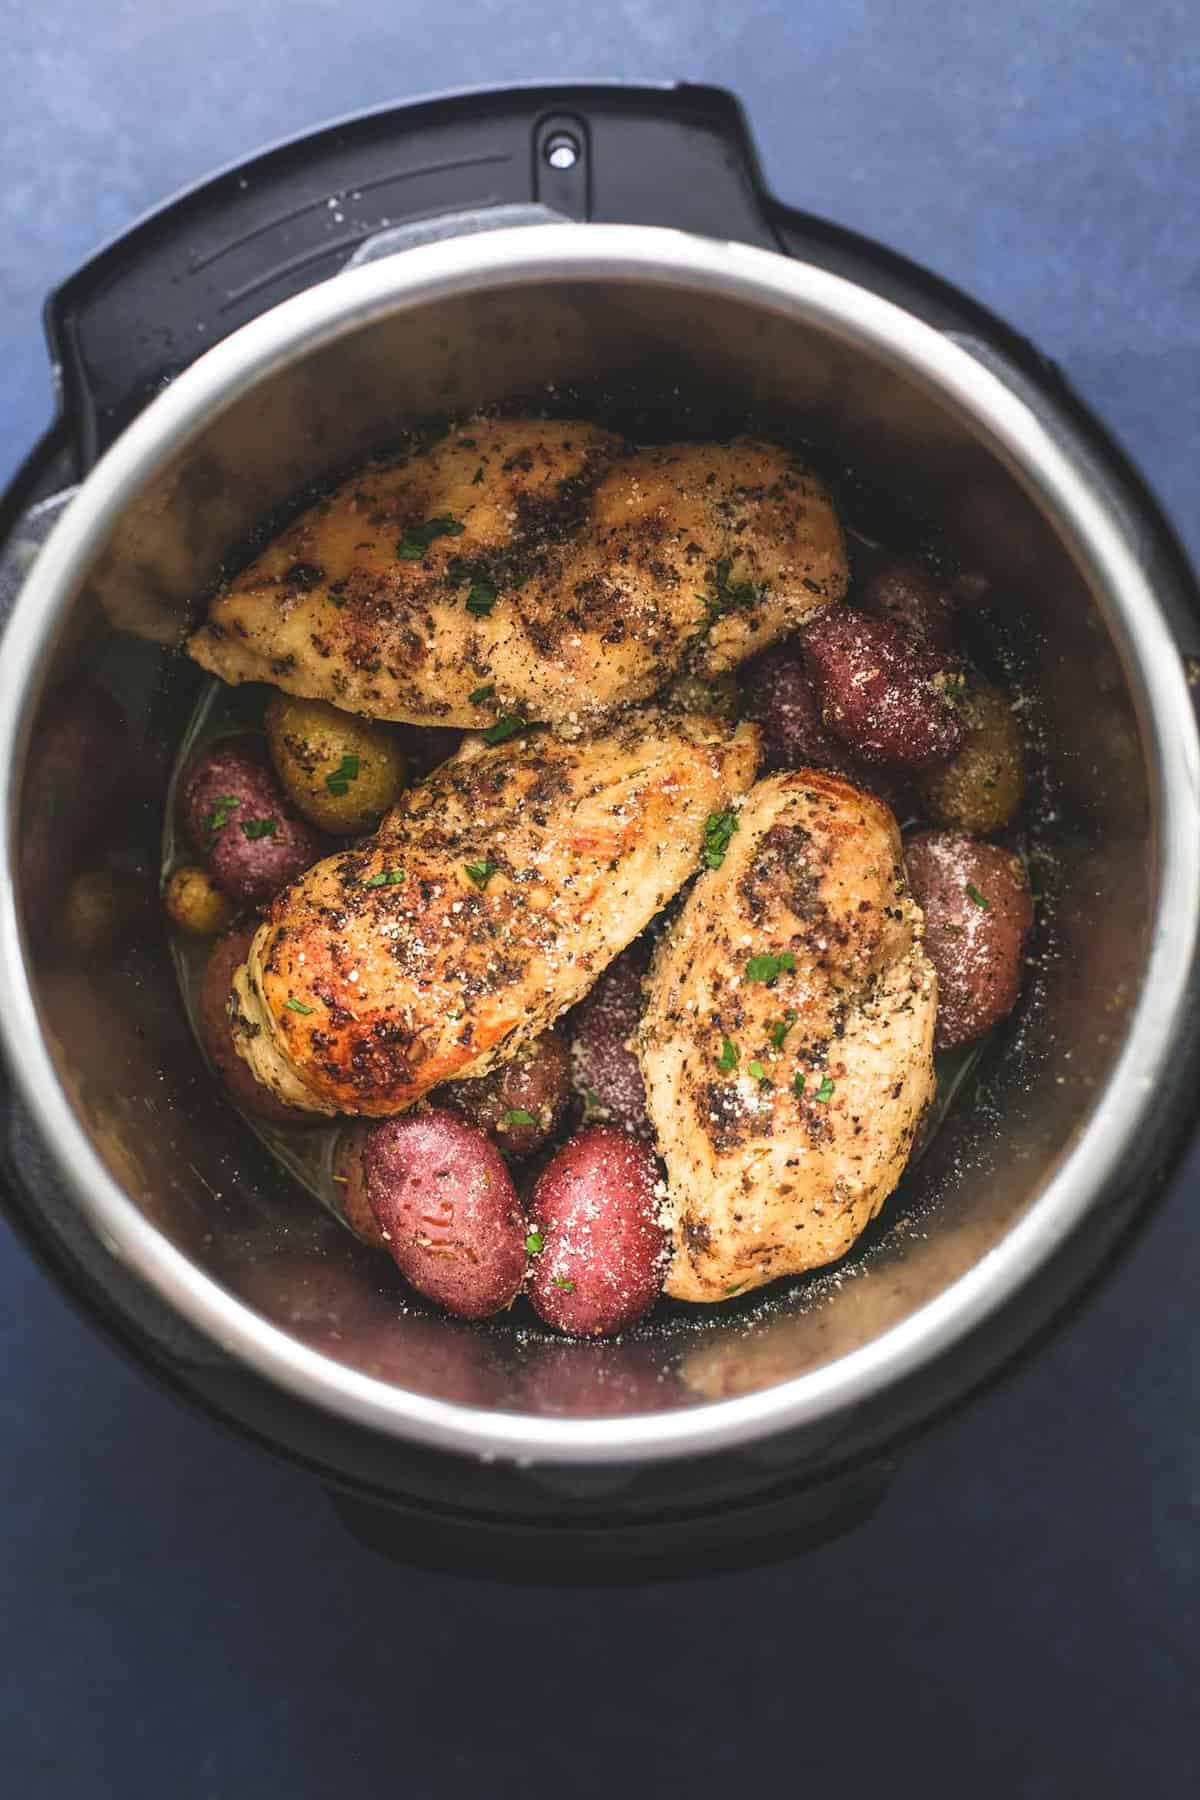 https://www.lecremedelacrumb.com/wp-content/uploads/2018/10/instant-pot-chicken-potatoes-1.jpg